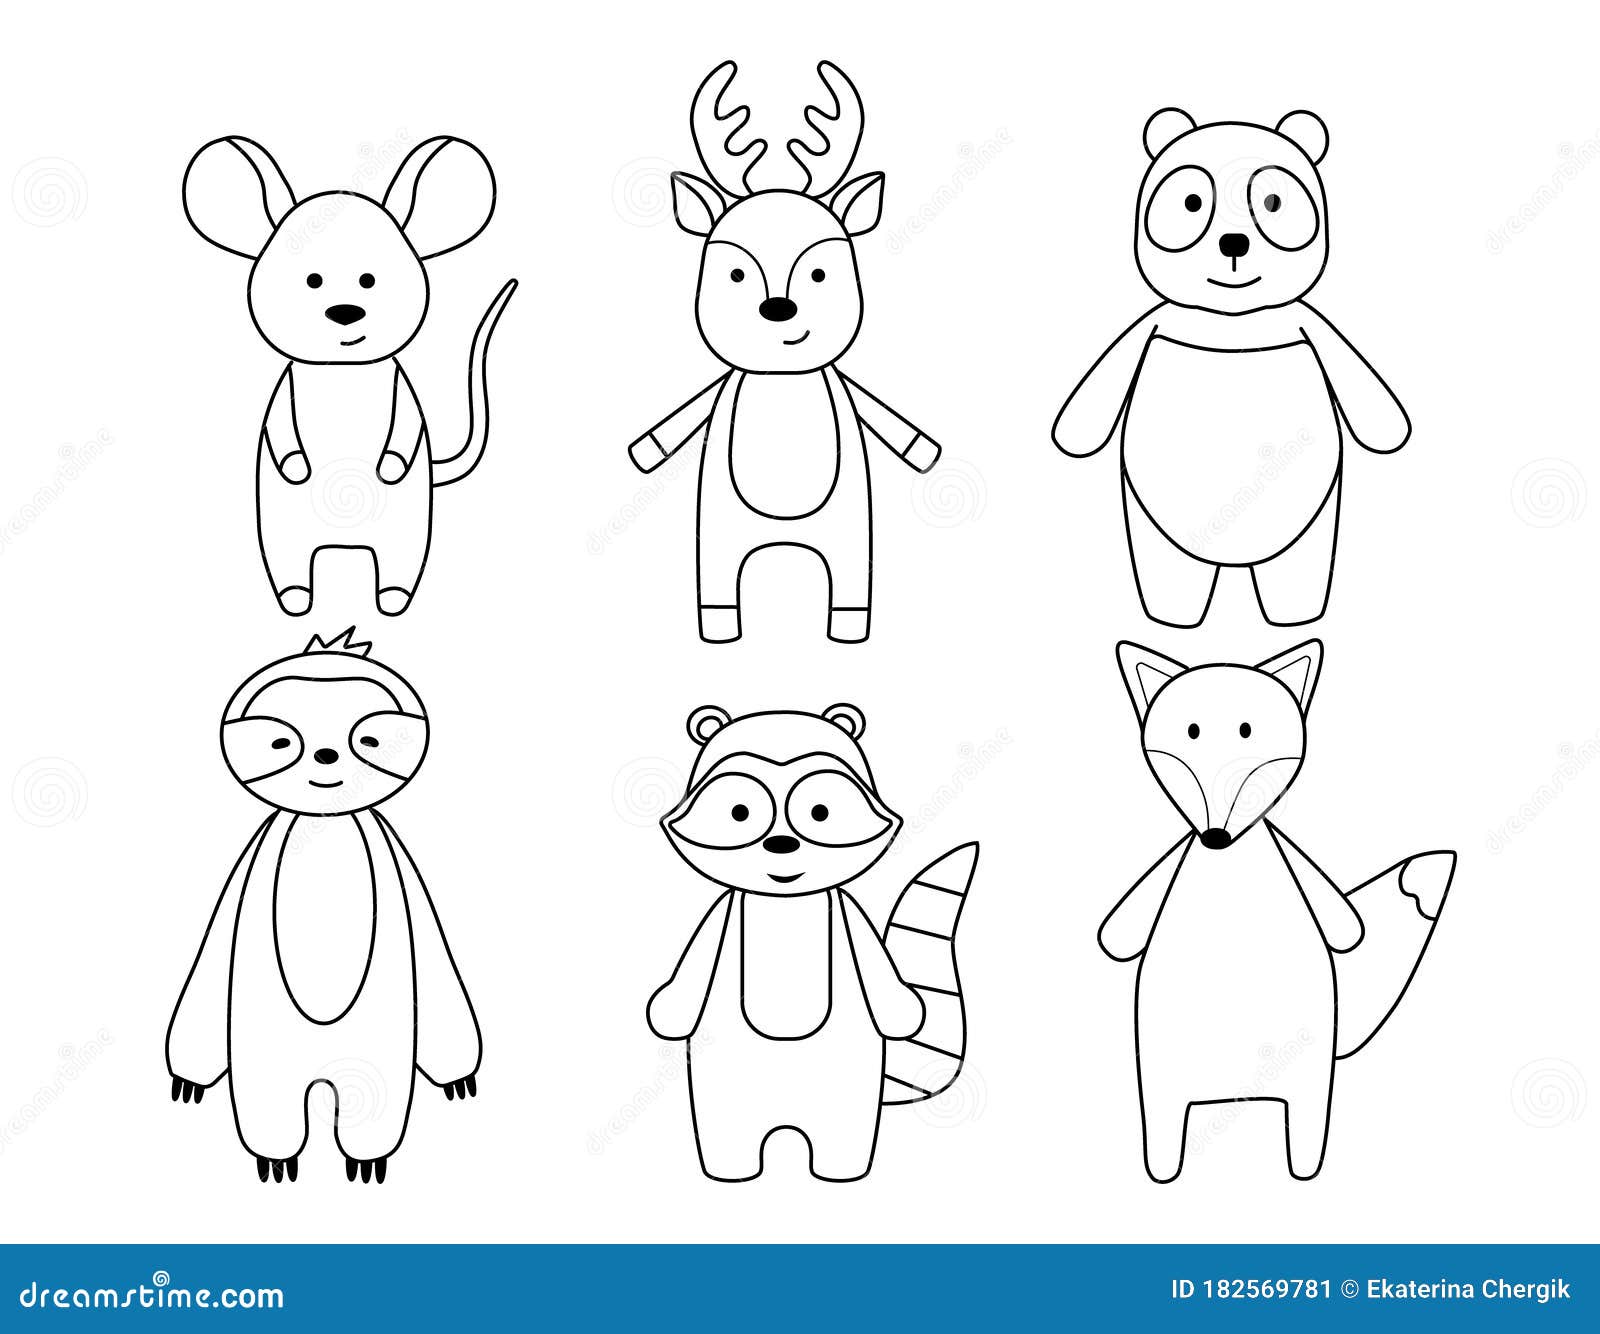 Colorindo Raposas: Desenho Divertido Para Crianças!